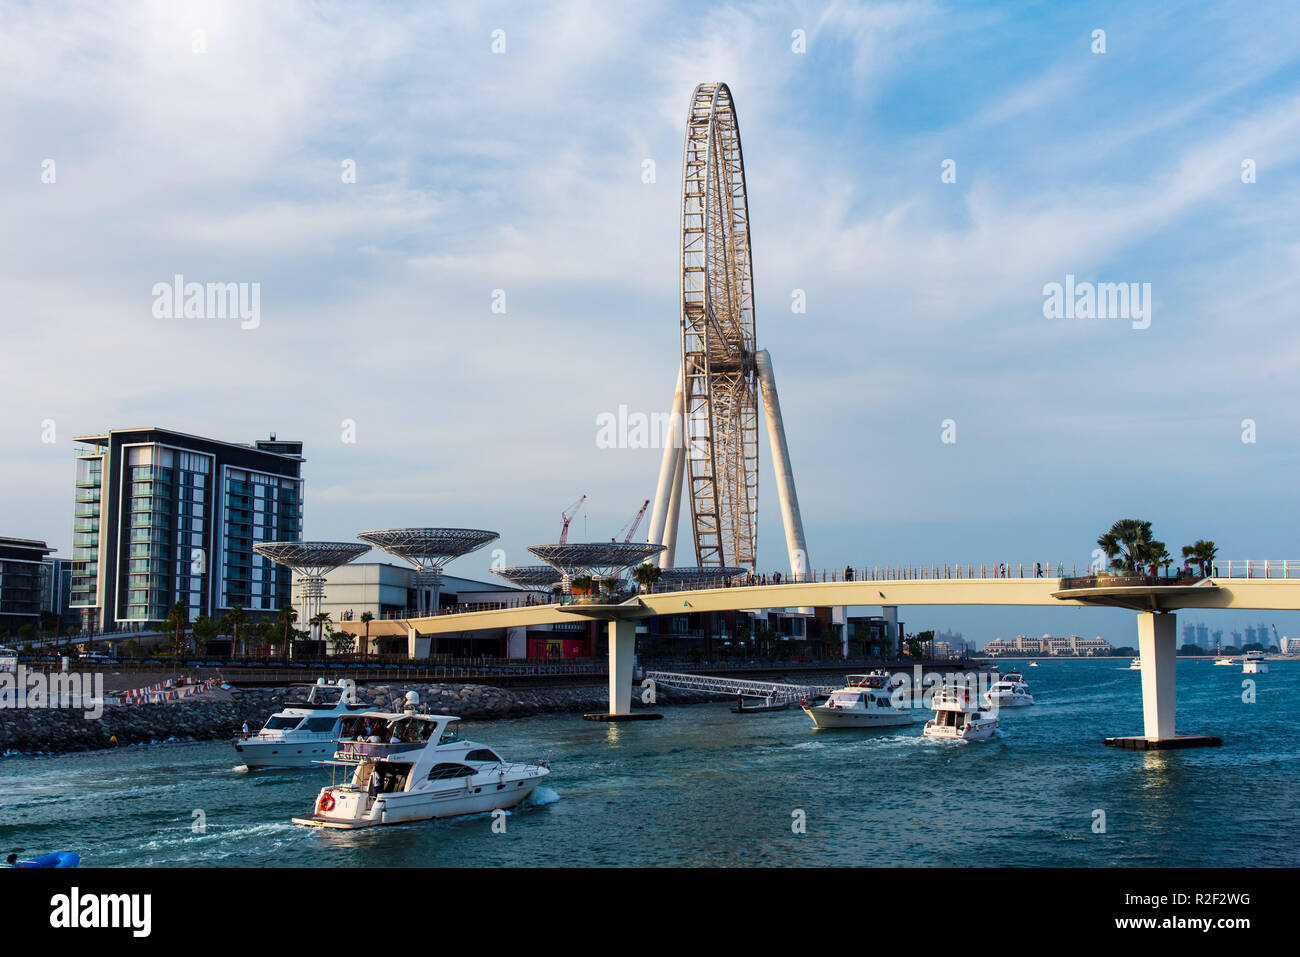 Dubai, Emirati Arabi Uniti - 16 Novembre 2018: Ain Dubai ruota panoramica Ferris e Bluewaters isola aperto recentemente tempo libero e viaggi spot in vista di Dubai da Foto Stock